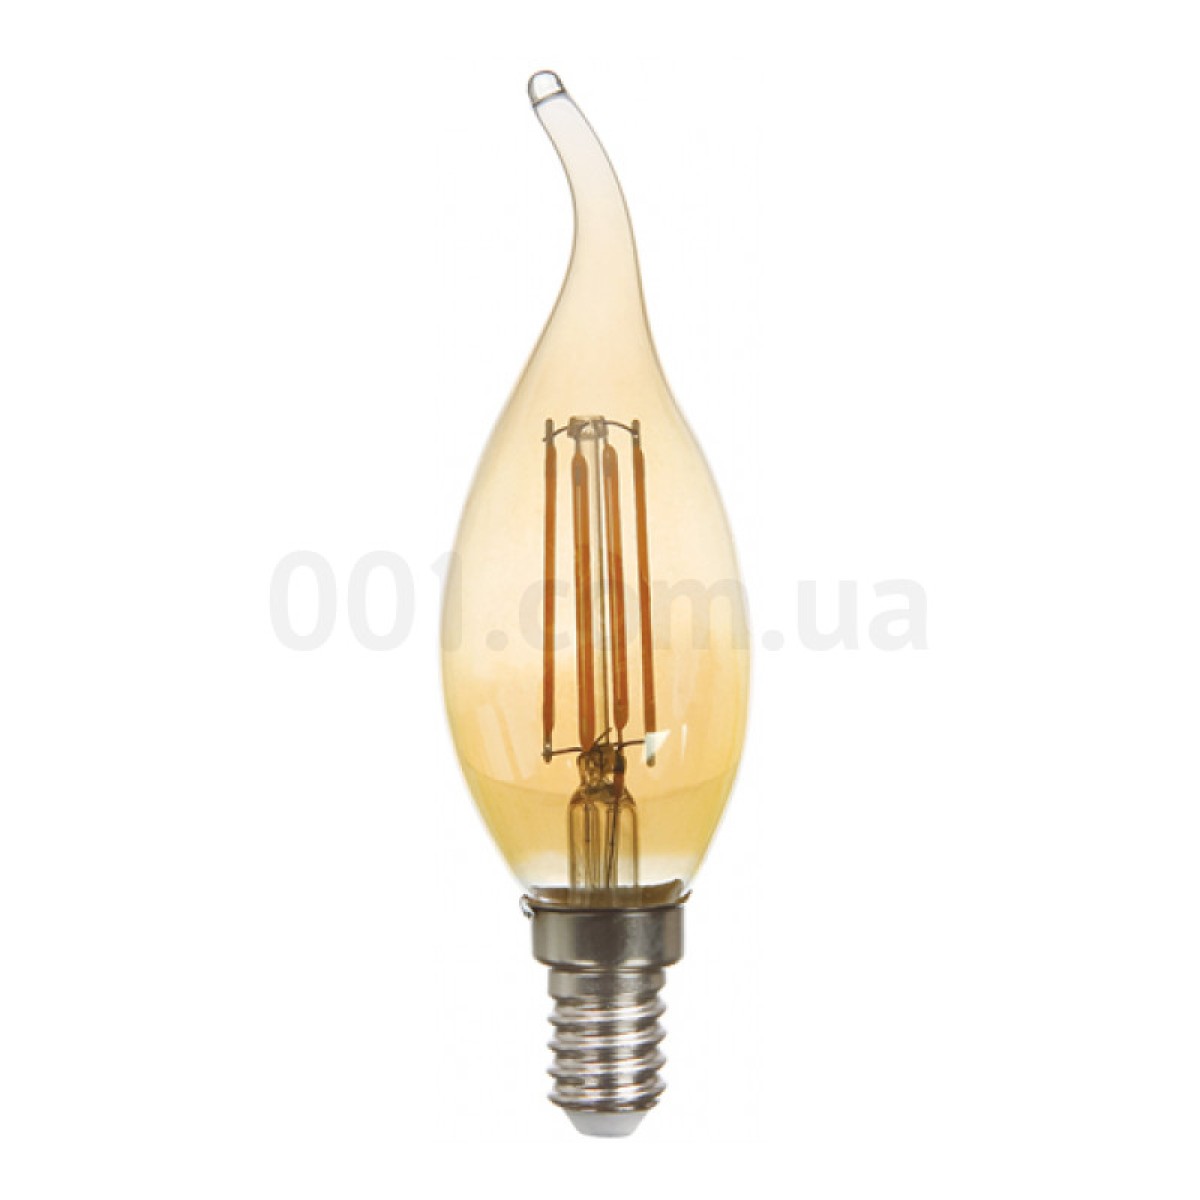 Світлодіодна лампа LB-59 CF37 (свічка на вітрі) філамент золото 4Вт 2200K E14, Feron 256_256.jpg